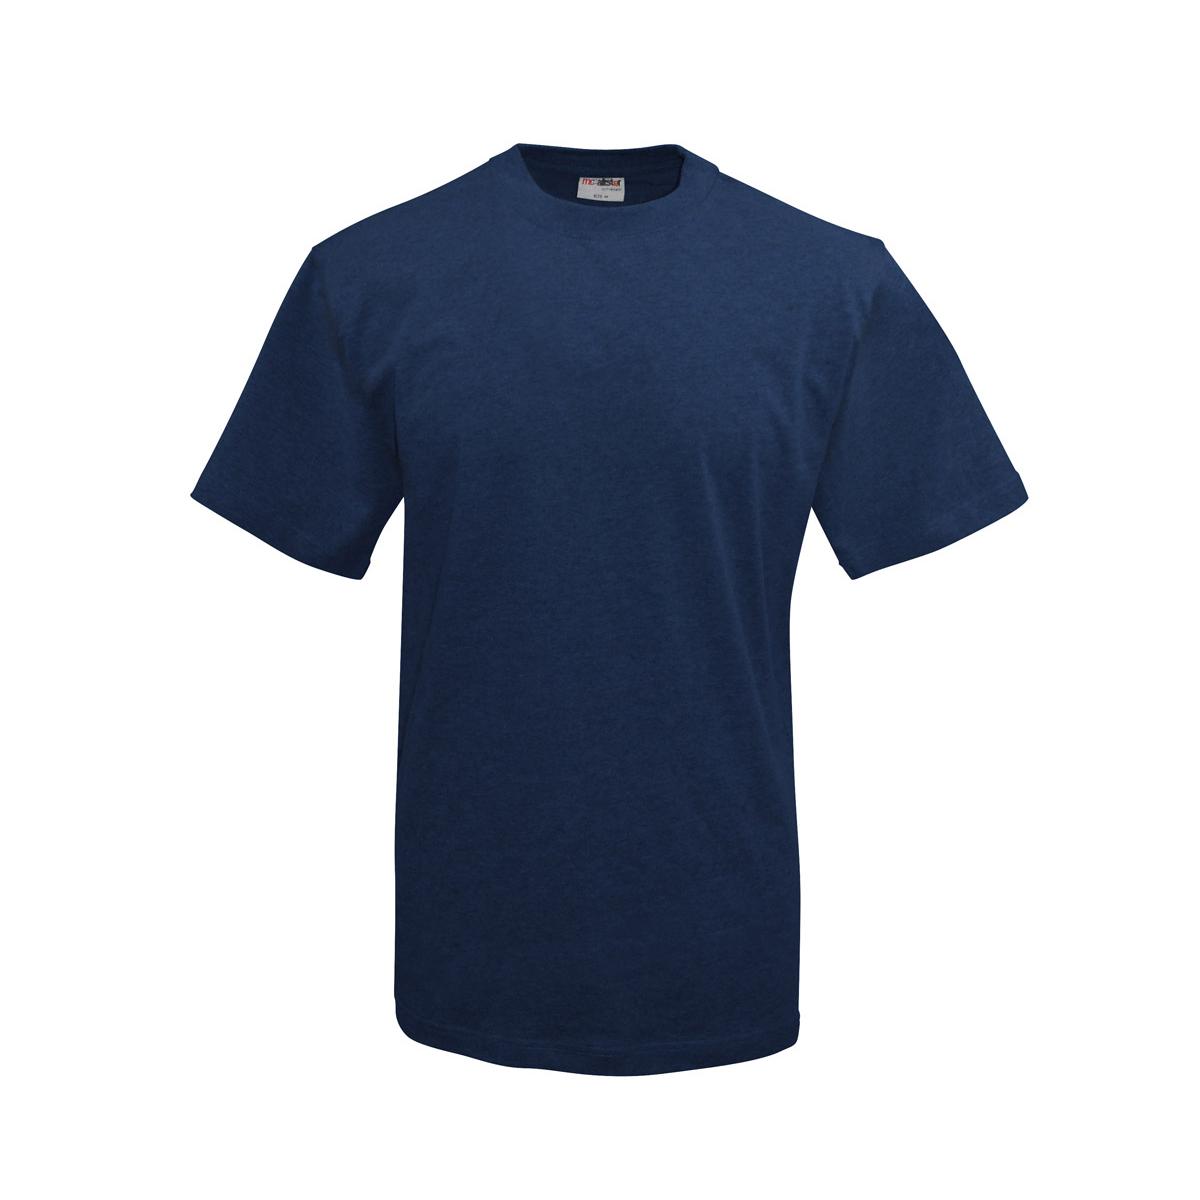 Active Wear - Männer T-Shirt - navy